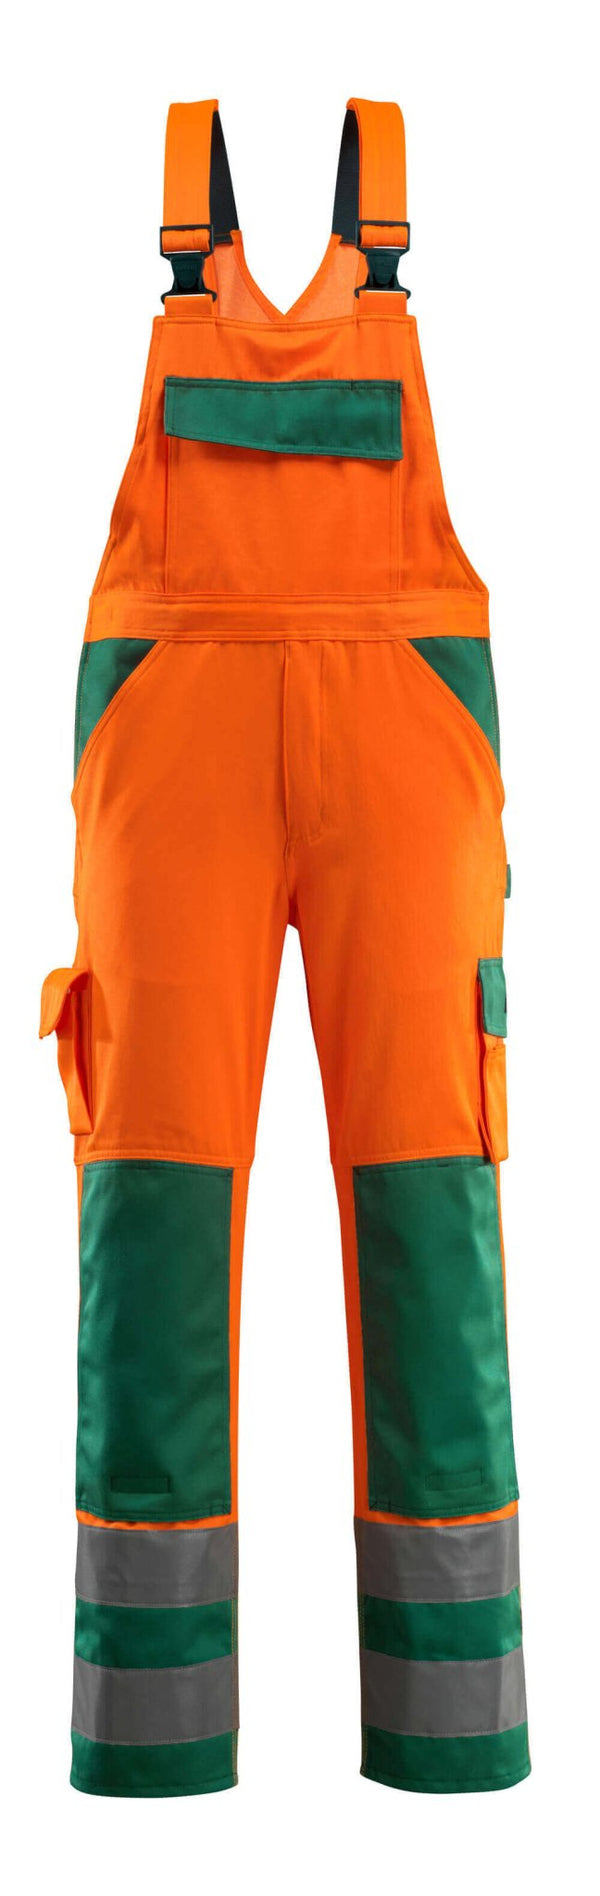 Avohaalari polvitaskuilla - 07169-860 - hi-vis oranssi/vihreä - Safewear